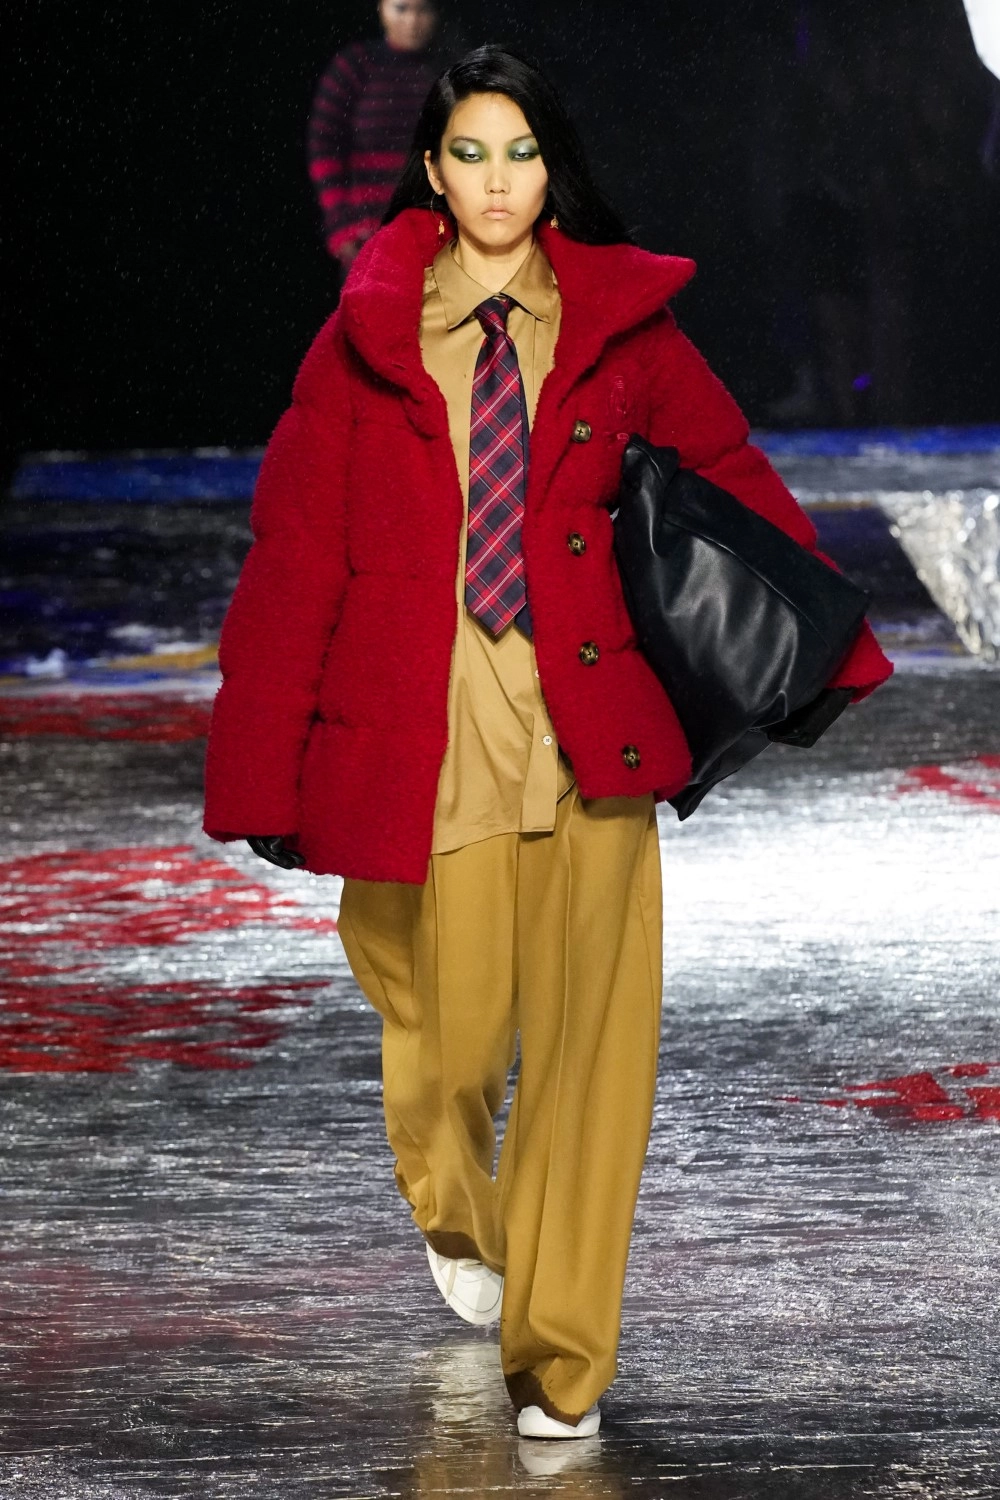 Tommy Hilfiger Fall Winter 2022 - New York Fashion Week